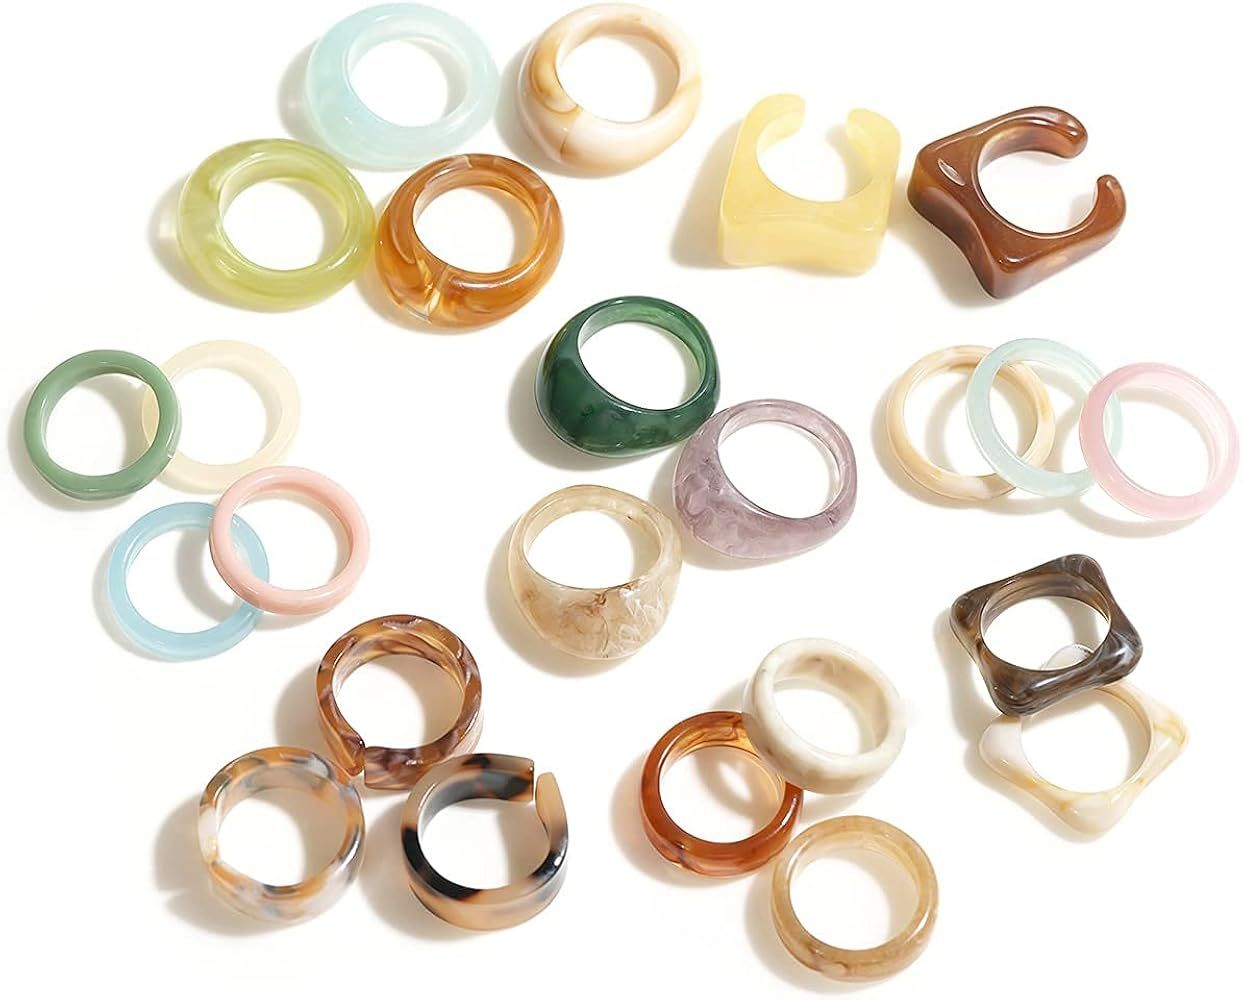 Viva Joya 24 Pcs Resin Rings, Plastic Rings Acrylic Rings for Women Teen Girls, Chunky Aesthetic ... | Amazon (US)